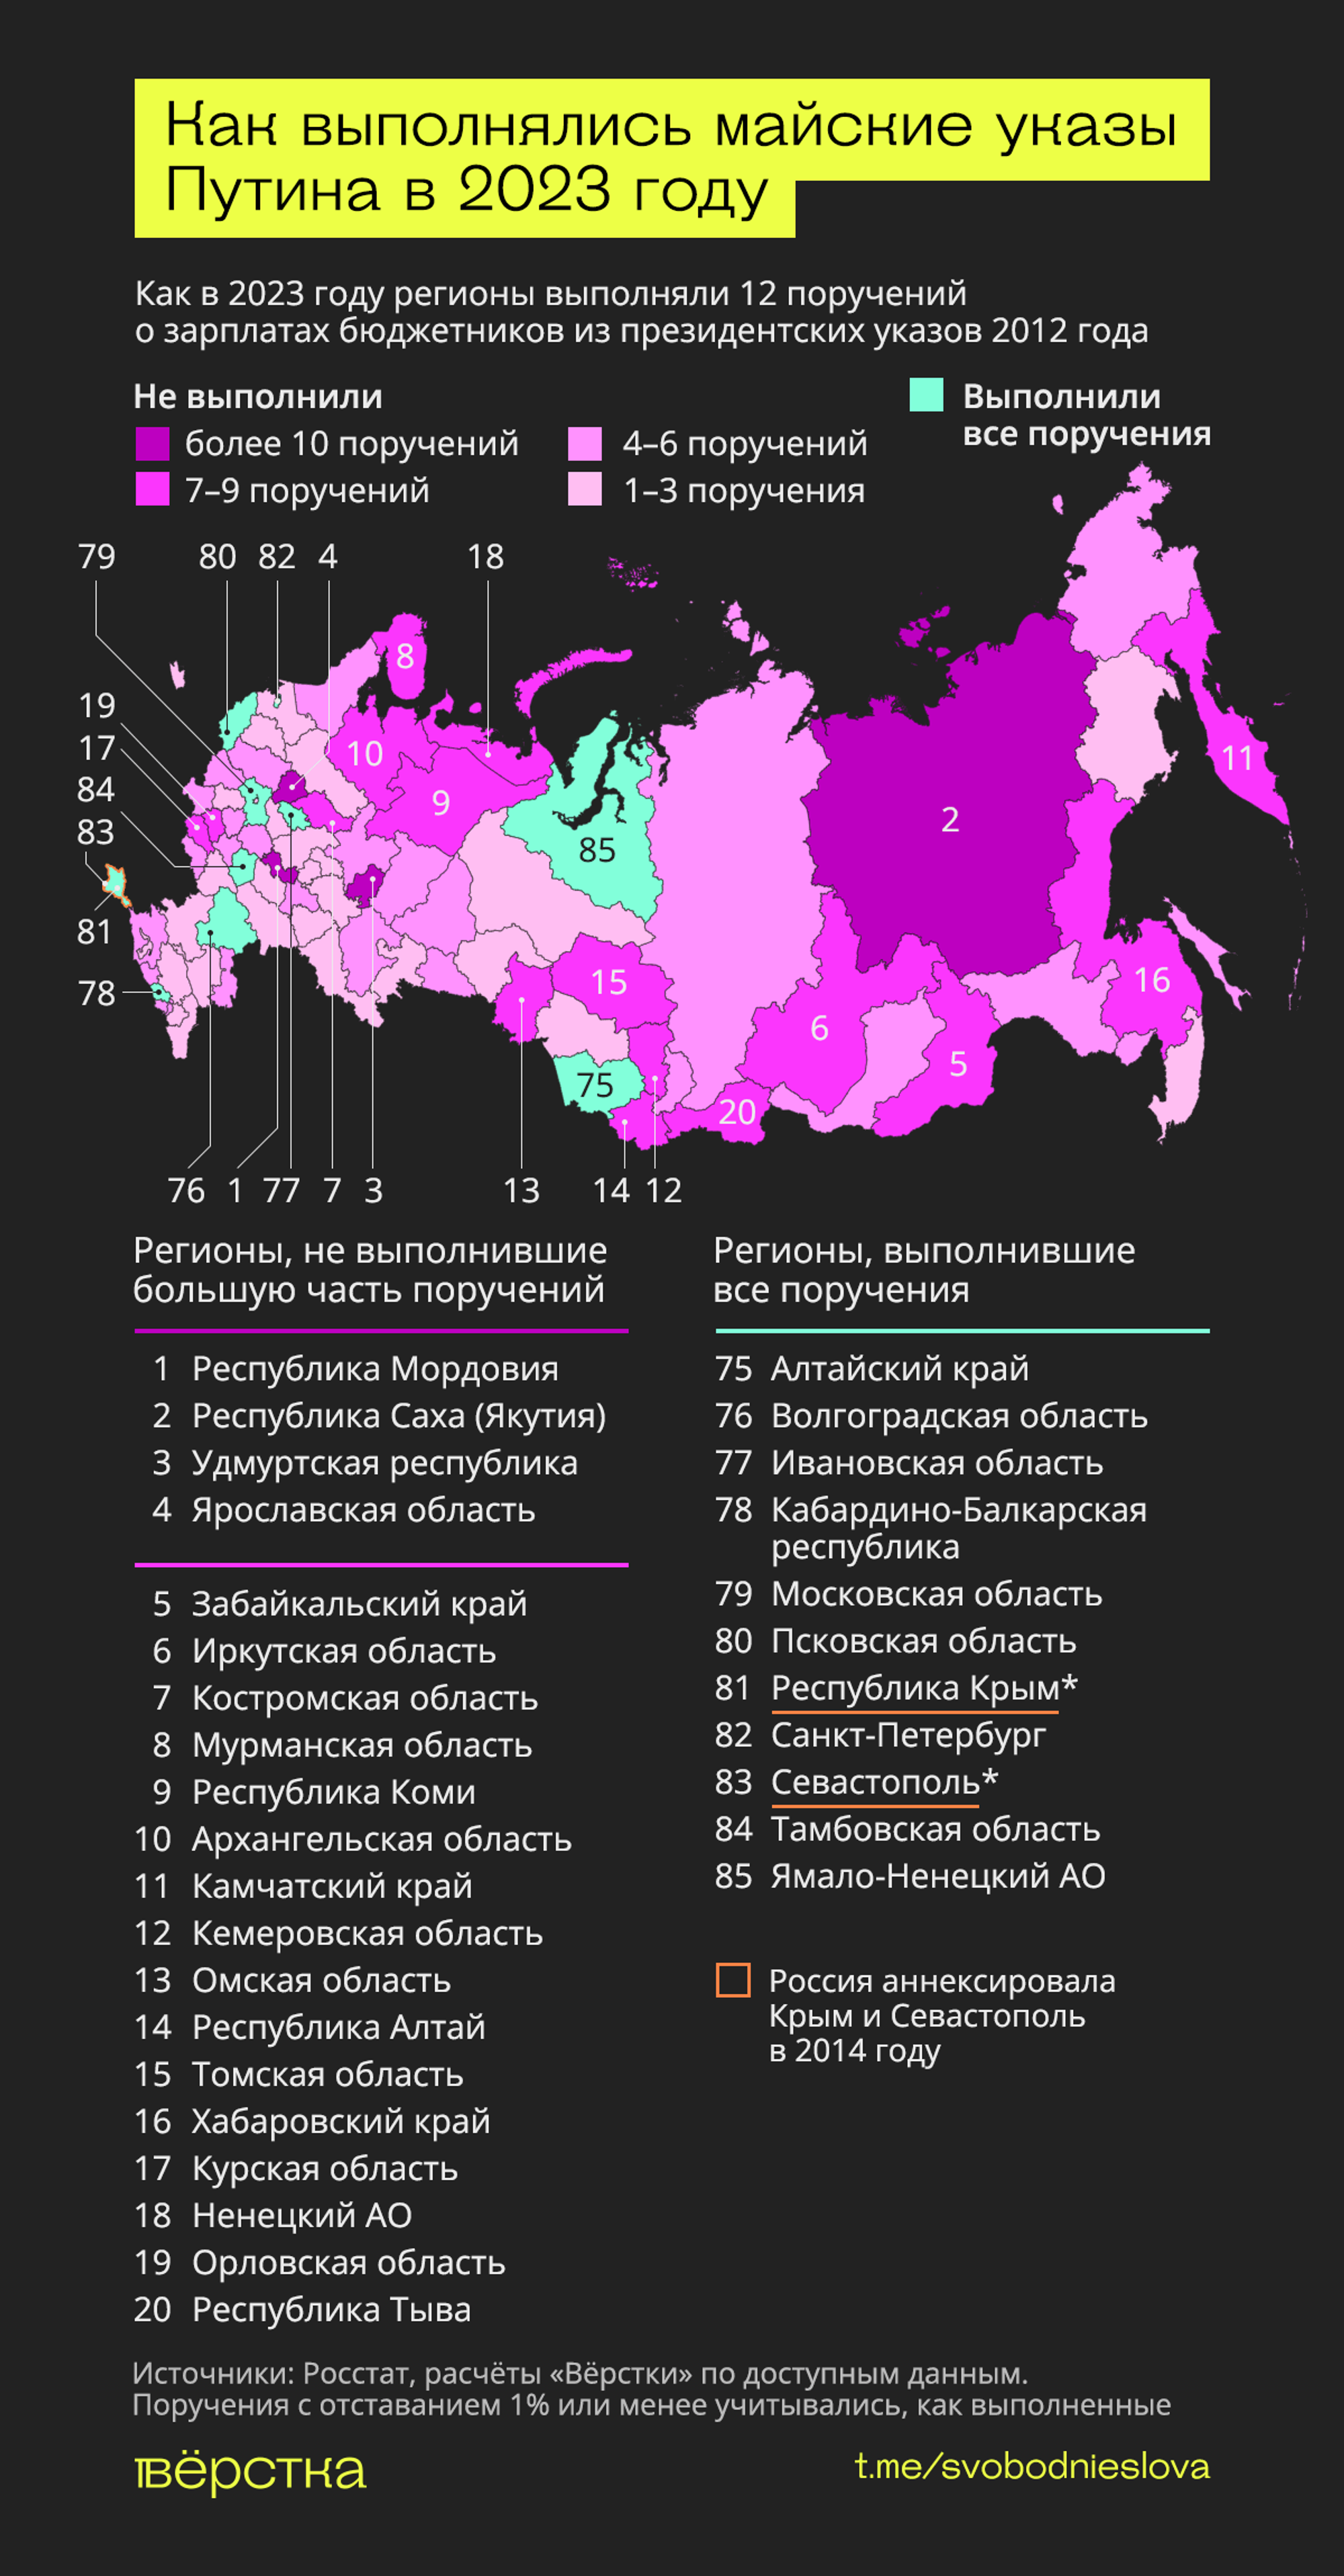 Как российские регионы выполняли поручения о зарплатах бюджетников из майских указов Путина инфографика